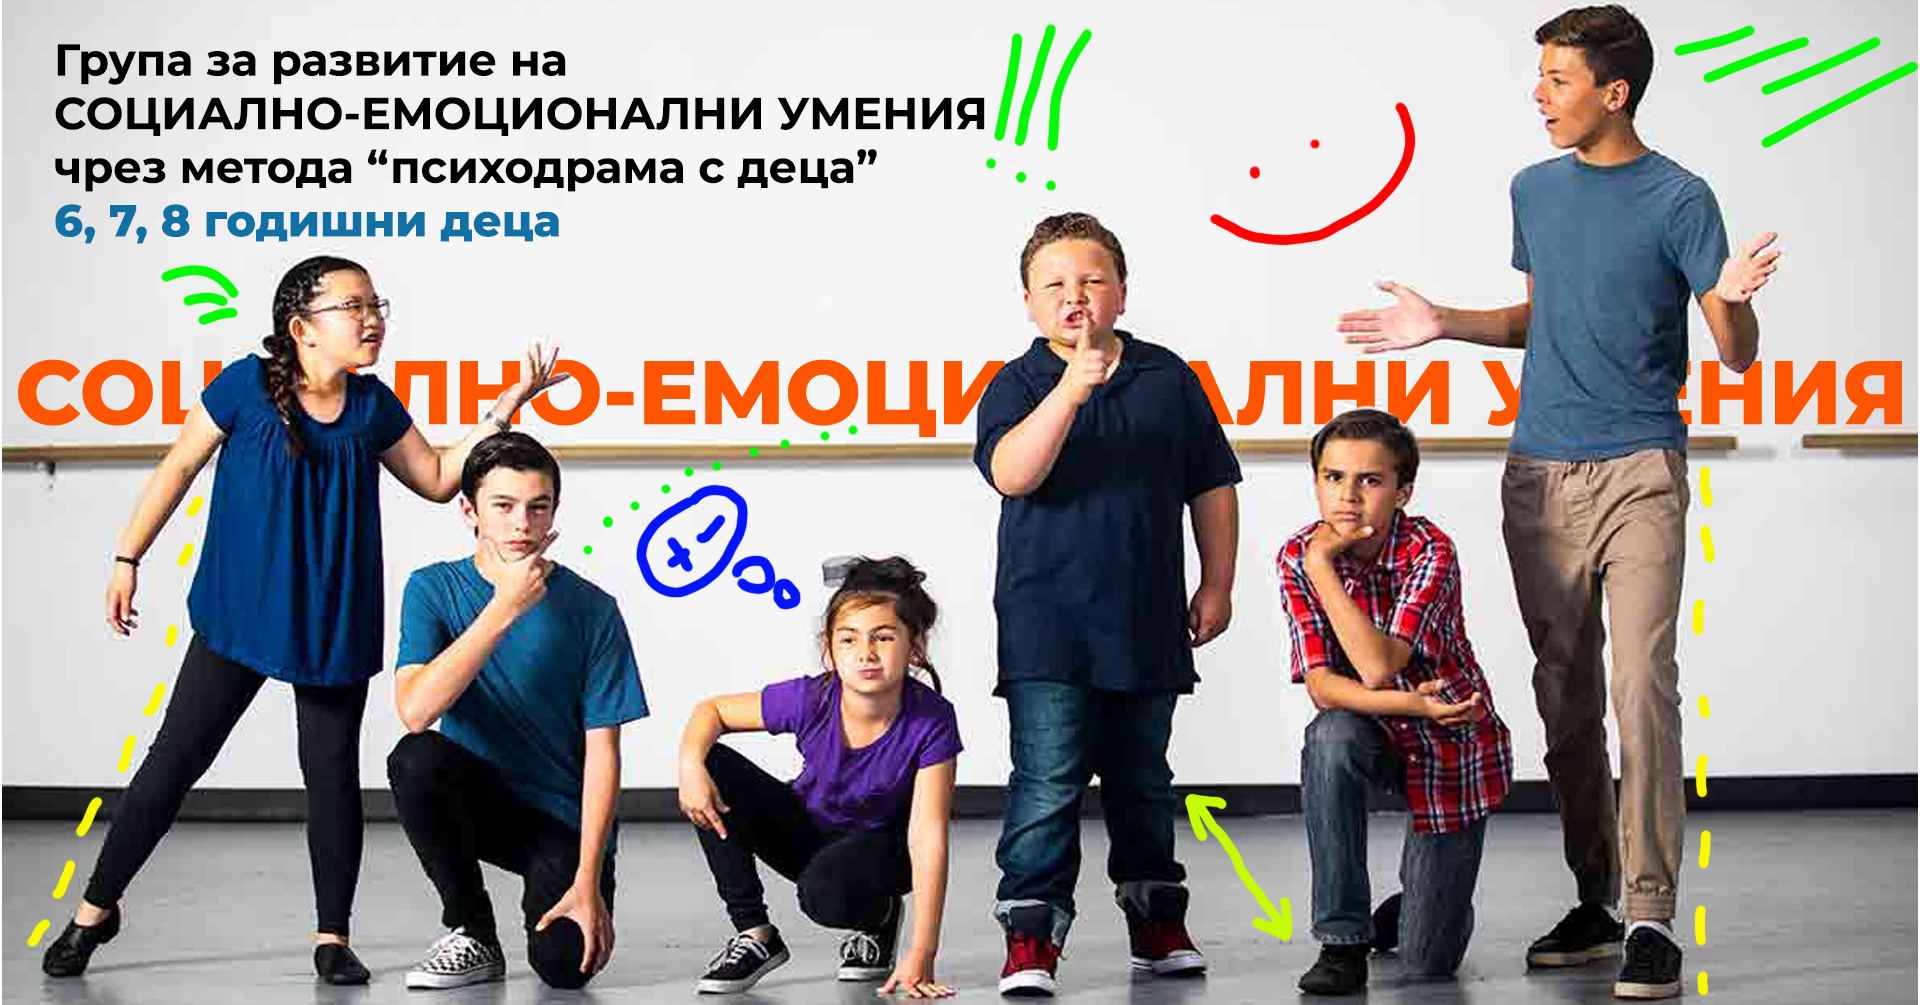 Стартира детска група за развитие на социално-емоционални умения чрез метода ”психодрама с деца”